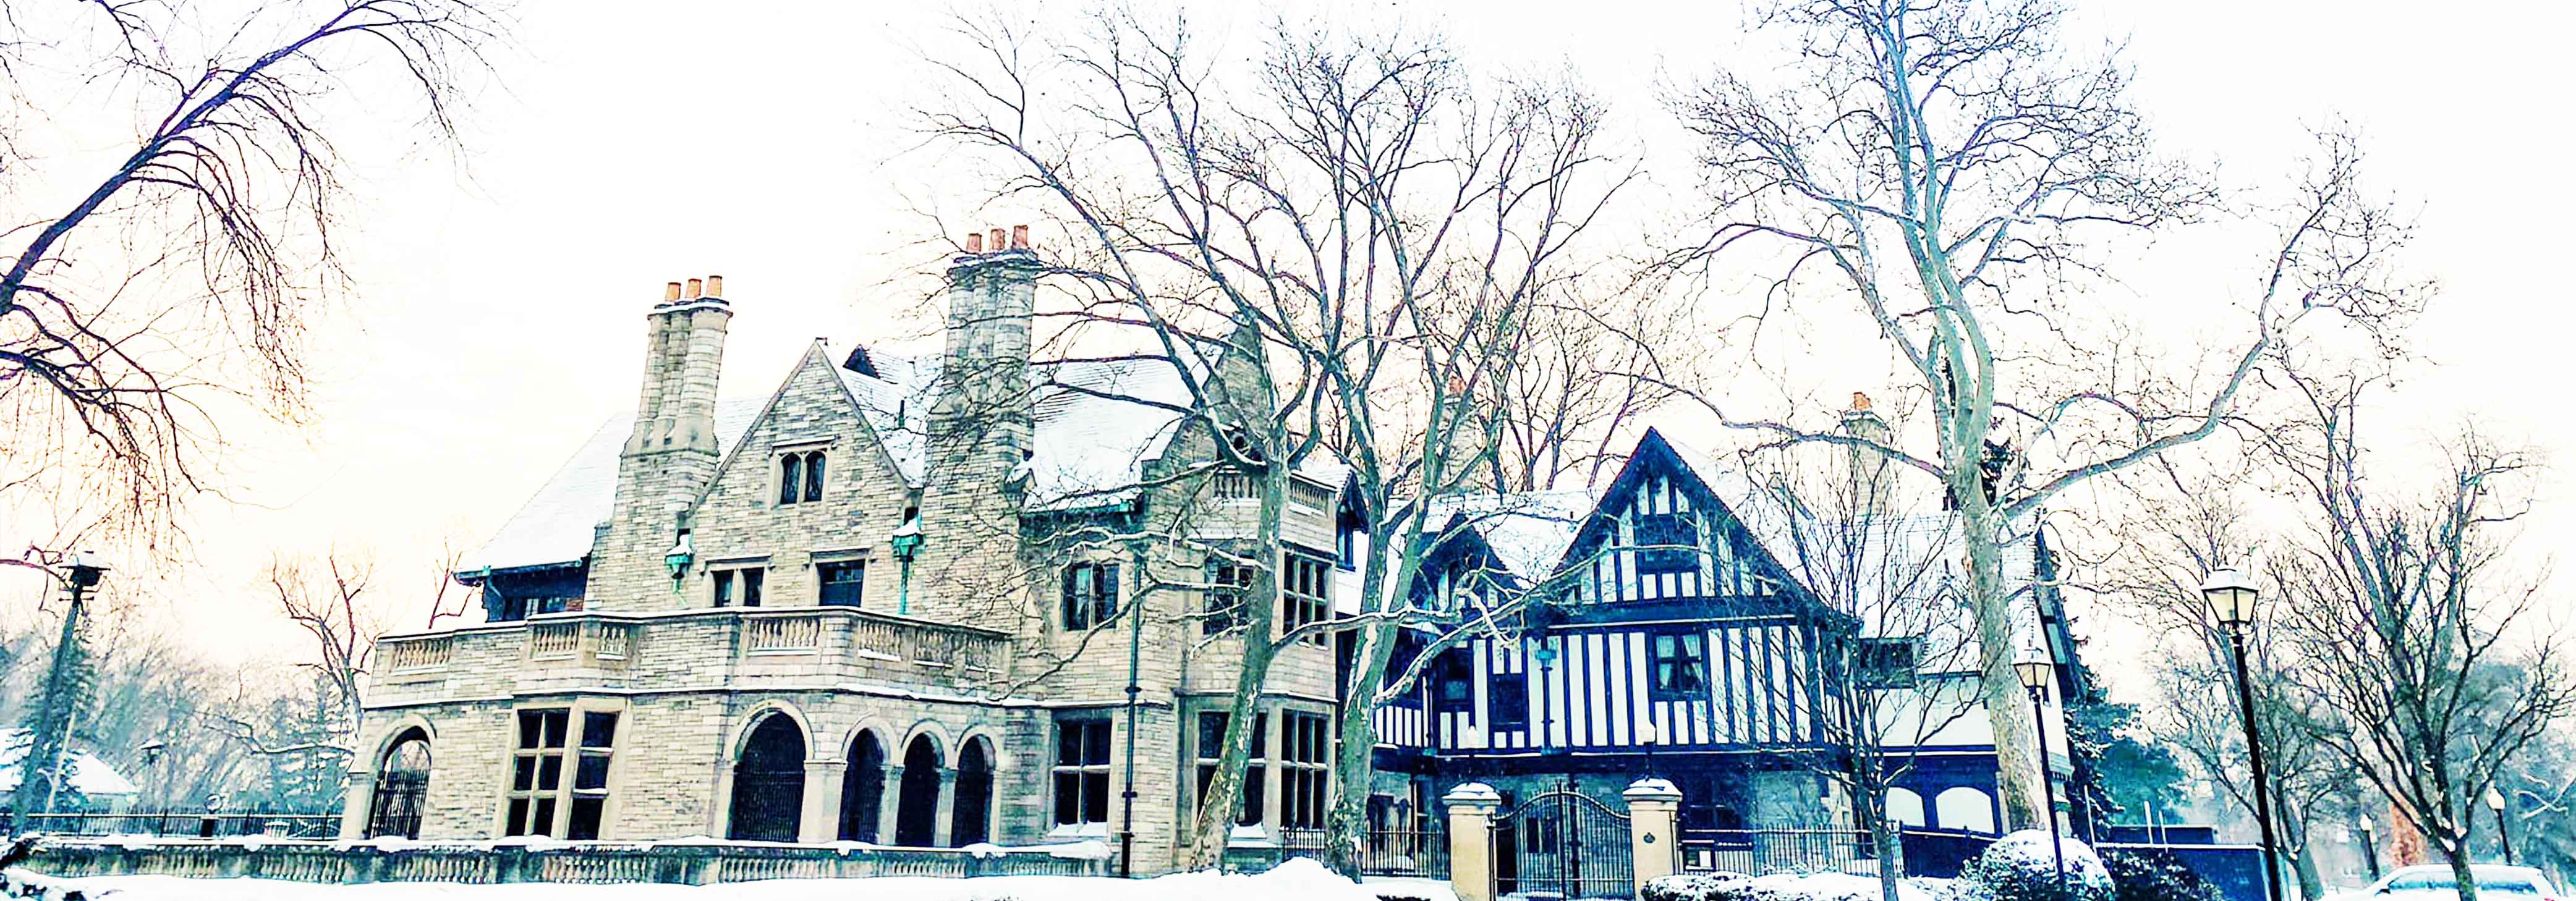 Willistead Manor, exterior in winter 2021